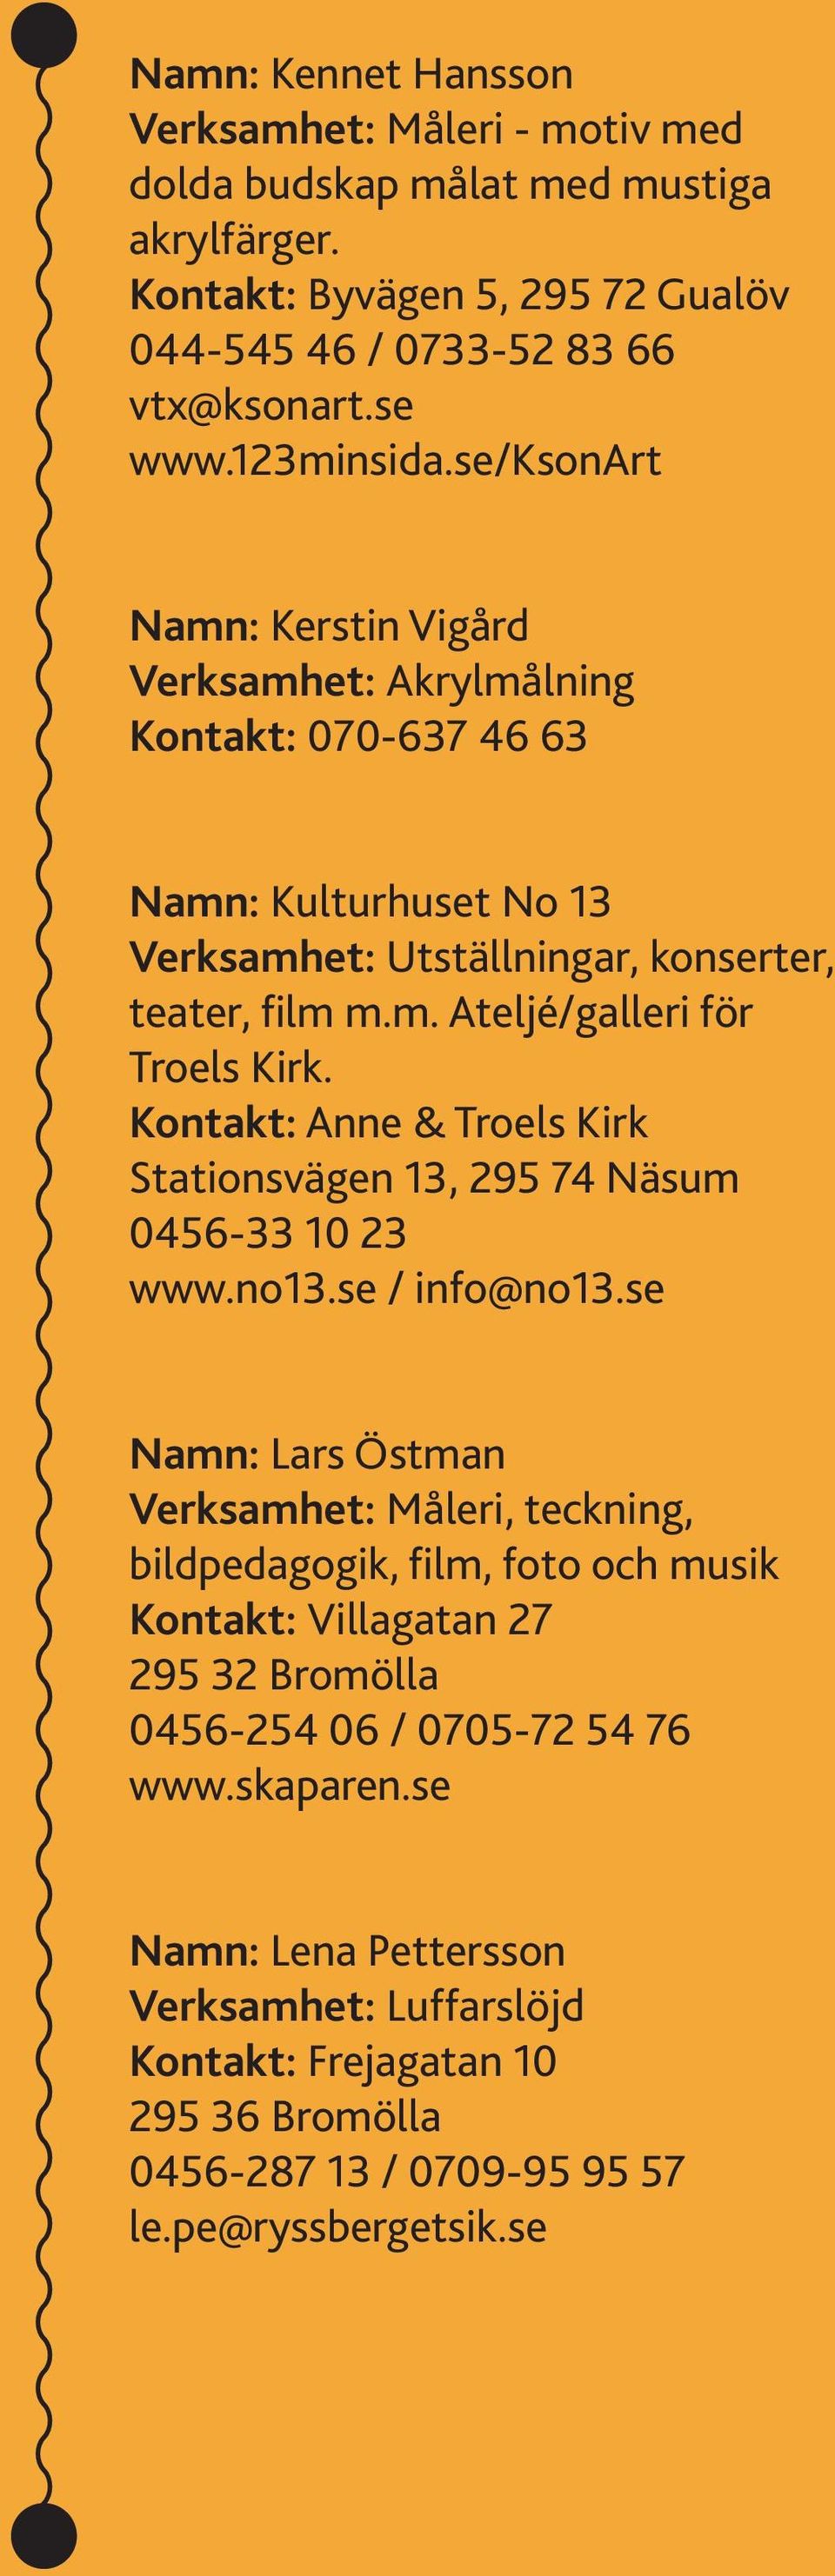 Kontakt: Anne & Troels Kirk Stationsvägen 13, 295 74 Näsum 0456-33 10 23 www.no13.se / info@no13.